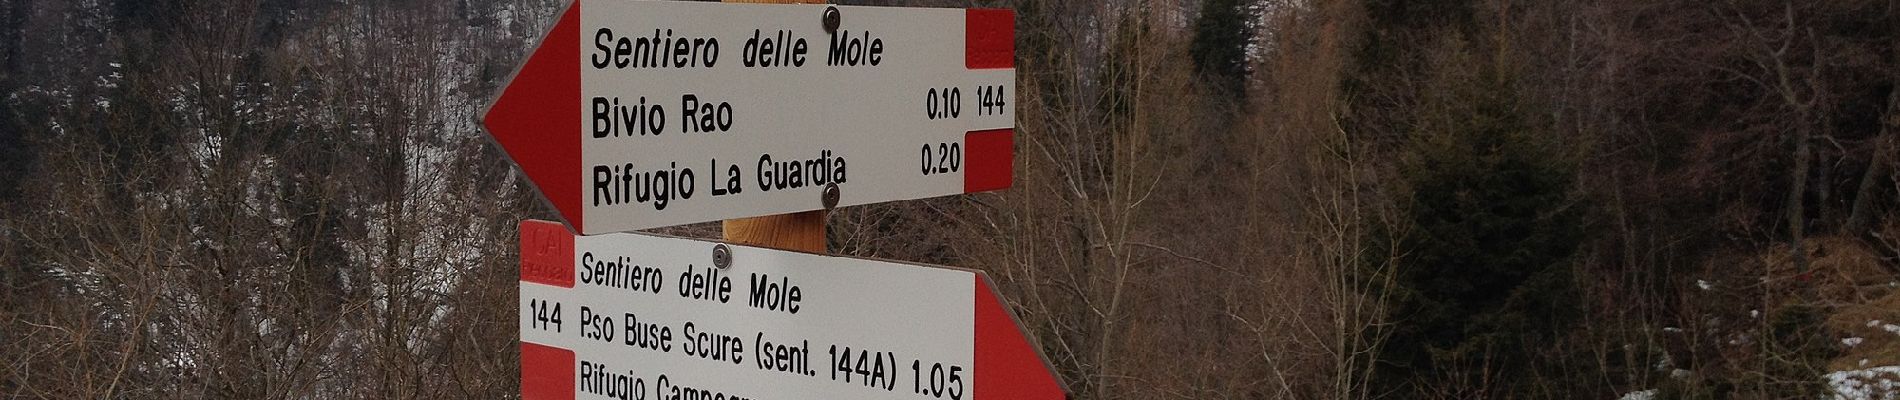 Trail On foot Recoaro Terme - Sentiero delle Mole - Photo